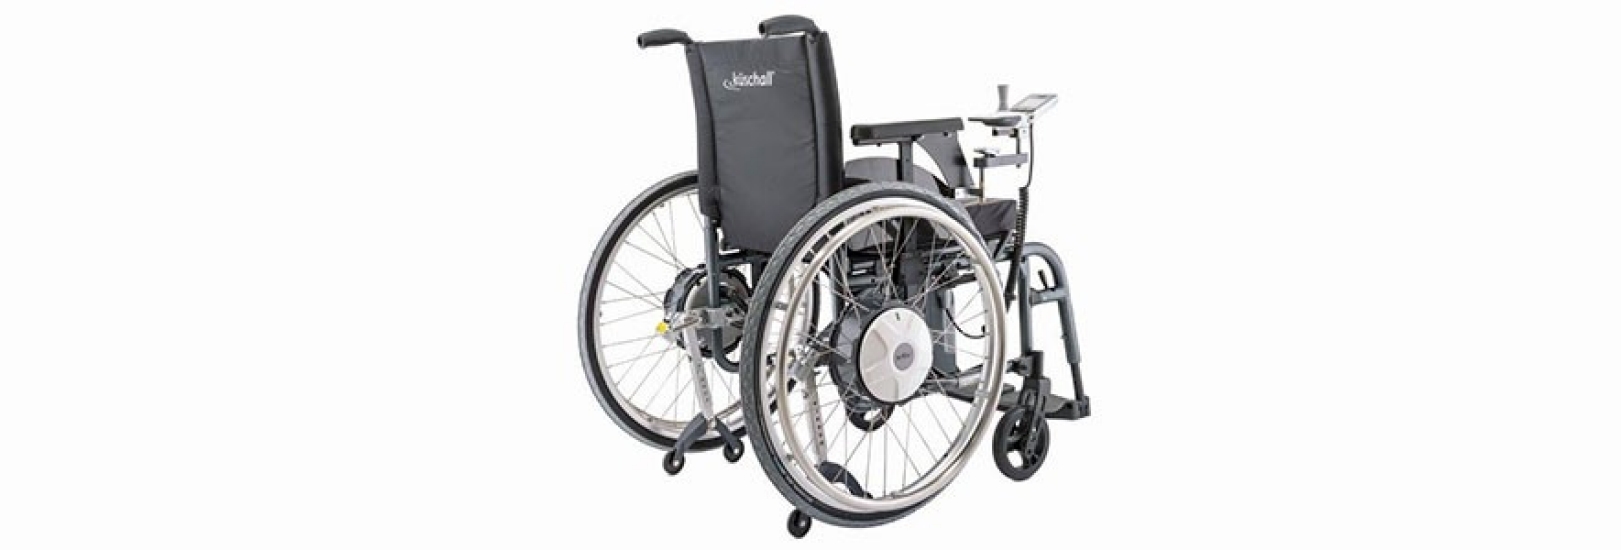 Elektrischer Zusatzantrieb für den Rollstuhl